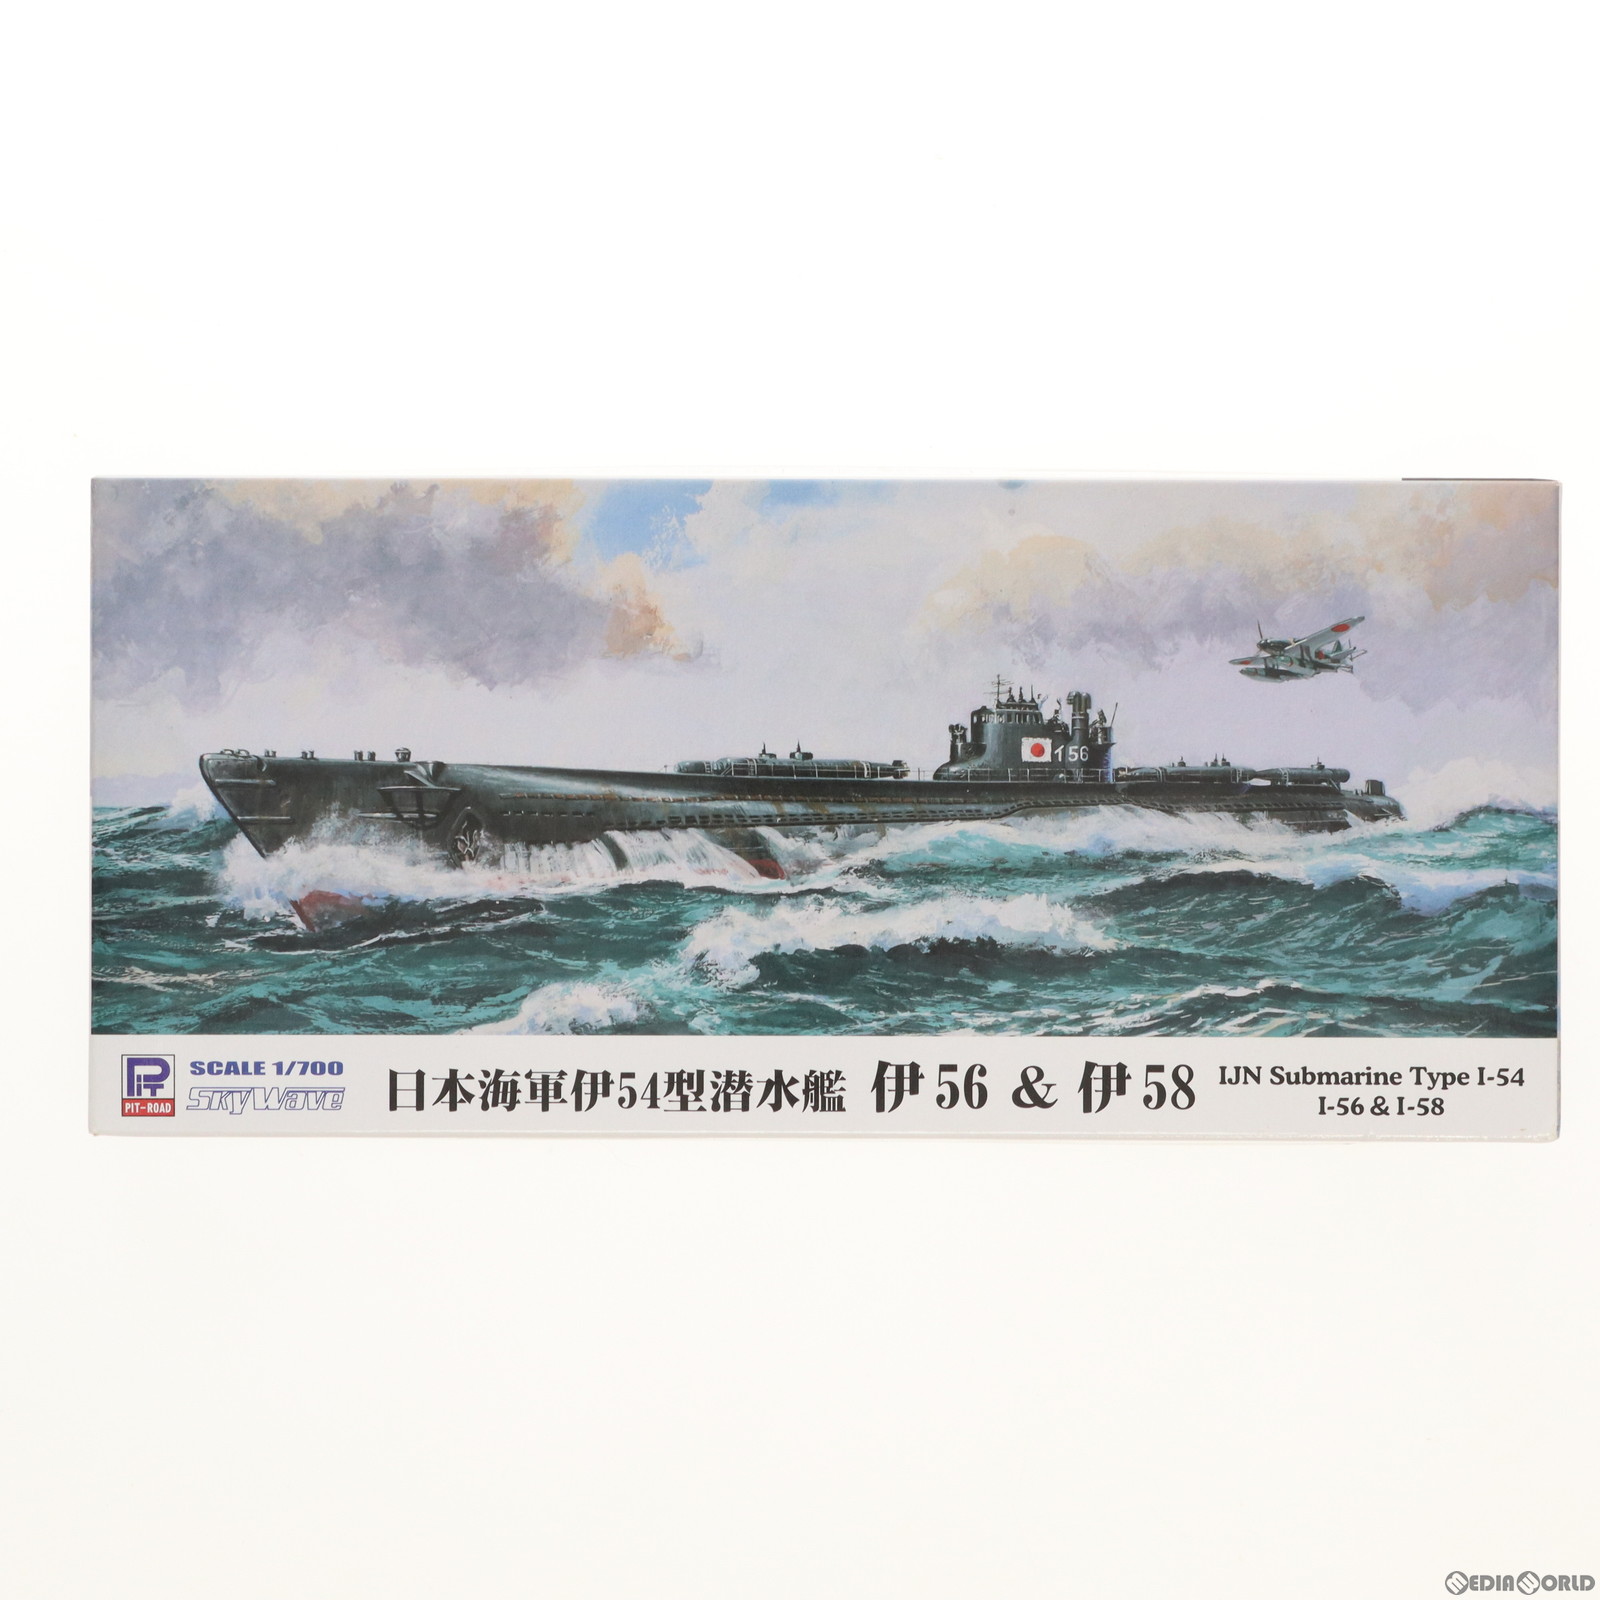 【中古即納】[PTM]スカイウェーブシリーズ 1/700 日本海軍伊54型潜水艦 伊56 伊58 2隻入り プラモデル(W122) ピットロード(20170723)